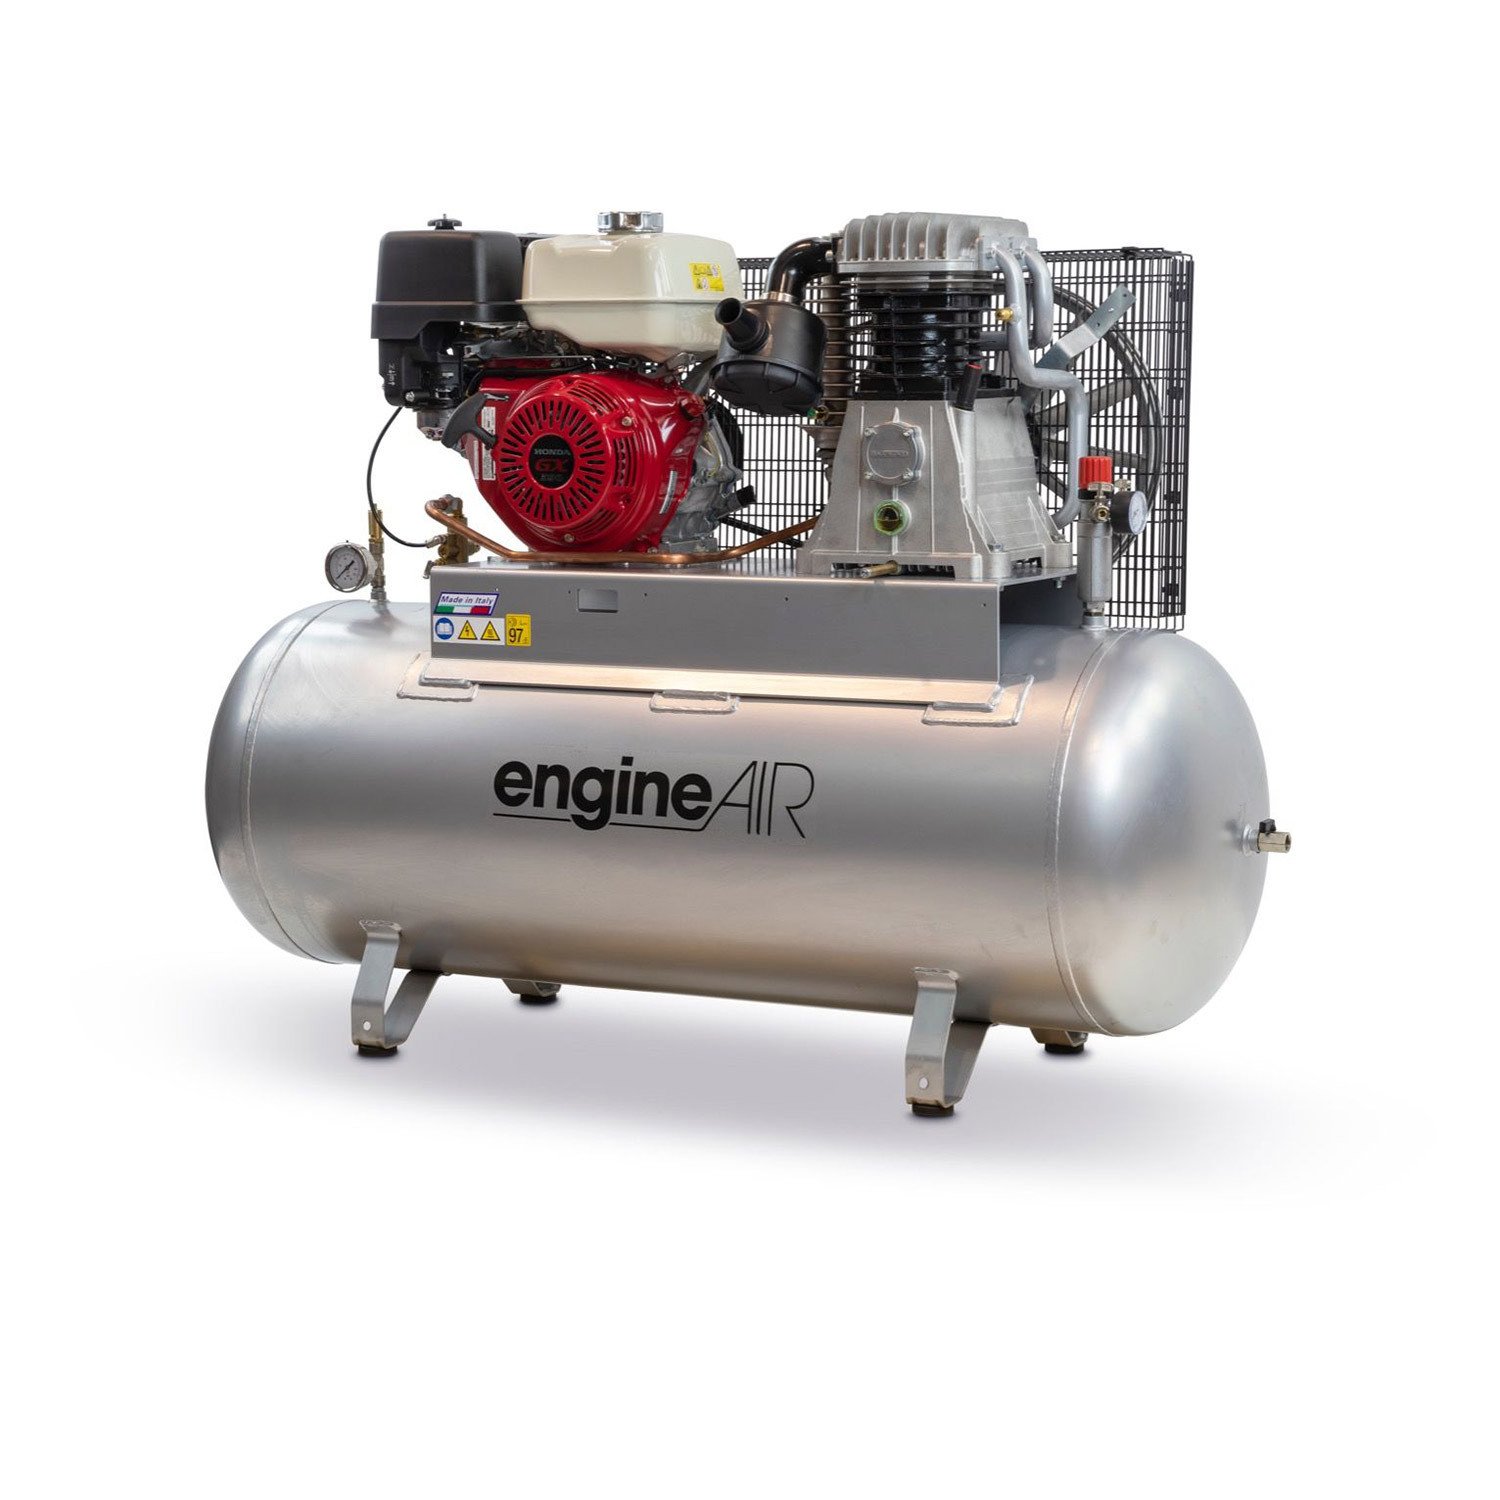 ABAC发动机Air 12/270 S ES汽油- 11.7马力270 LT静态柴油空气压缩机